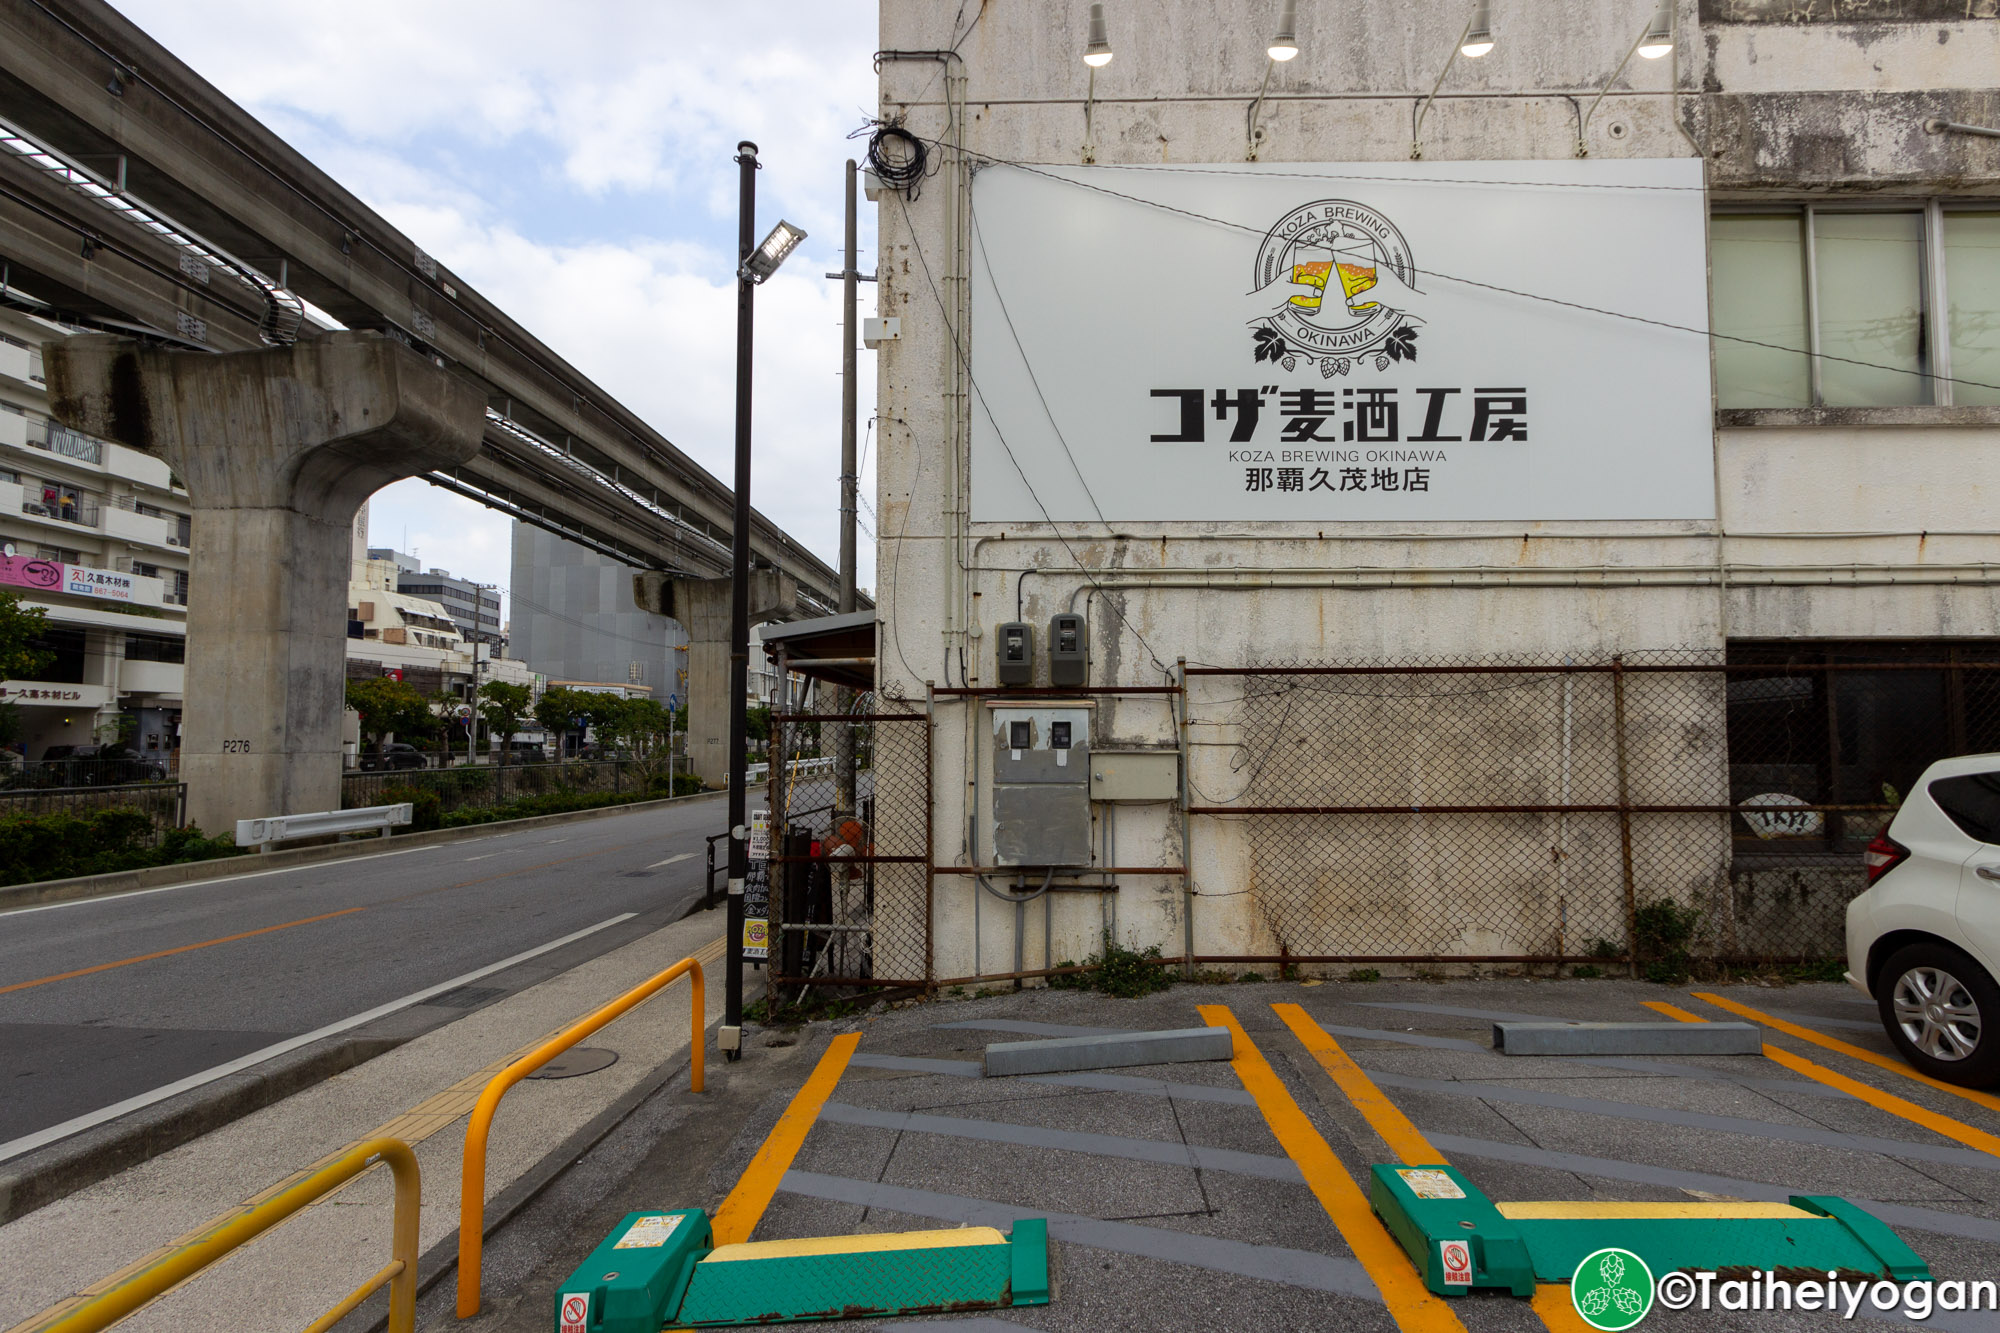 コザ麦酒工房・Koza Brewing Okinawa (那覇久茂地店・Shuri Kumoji) - Entrance - Sign